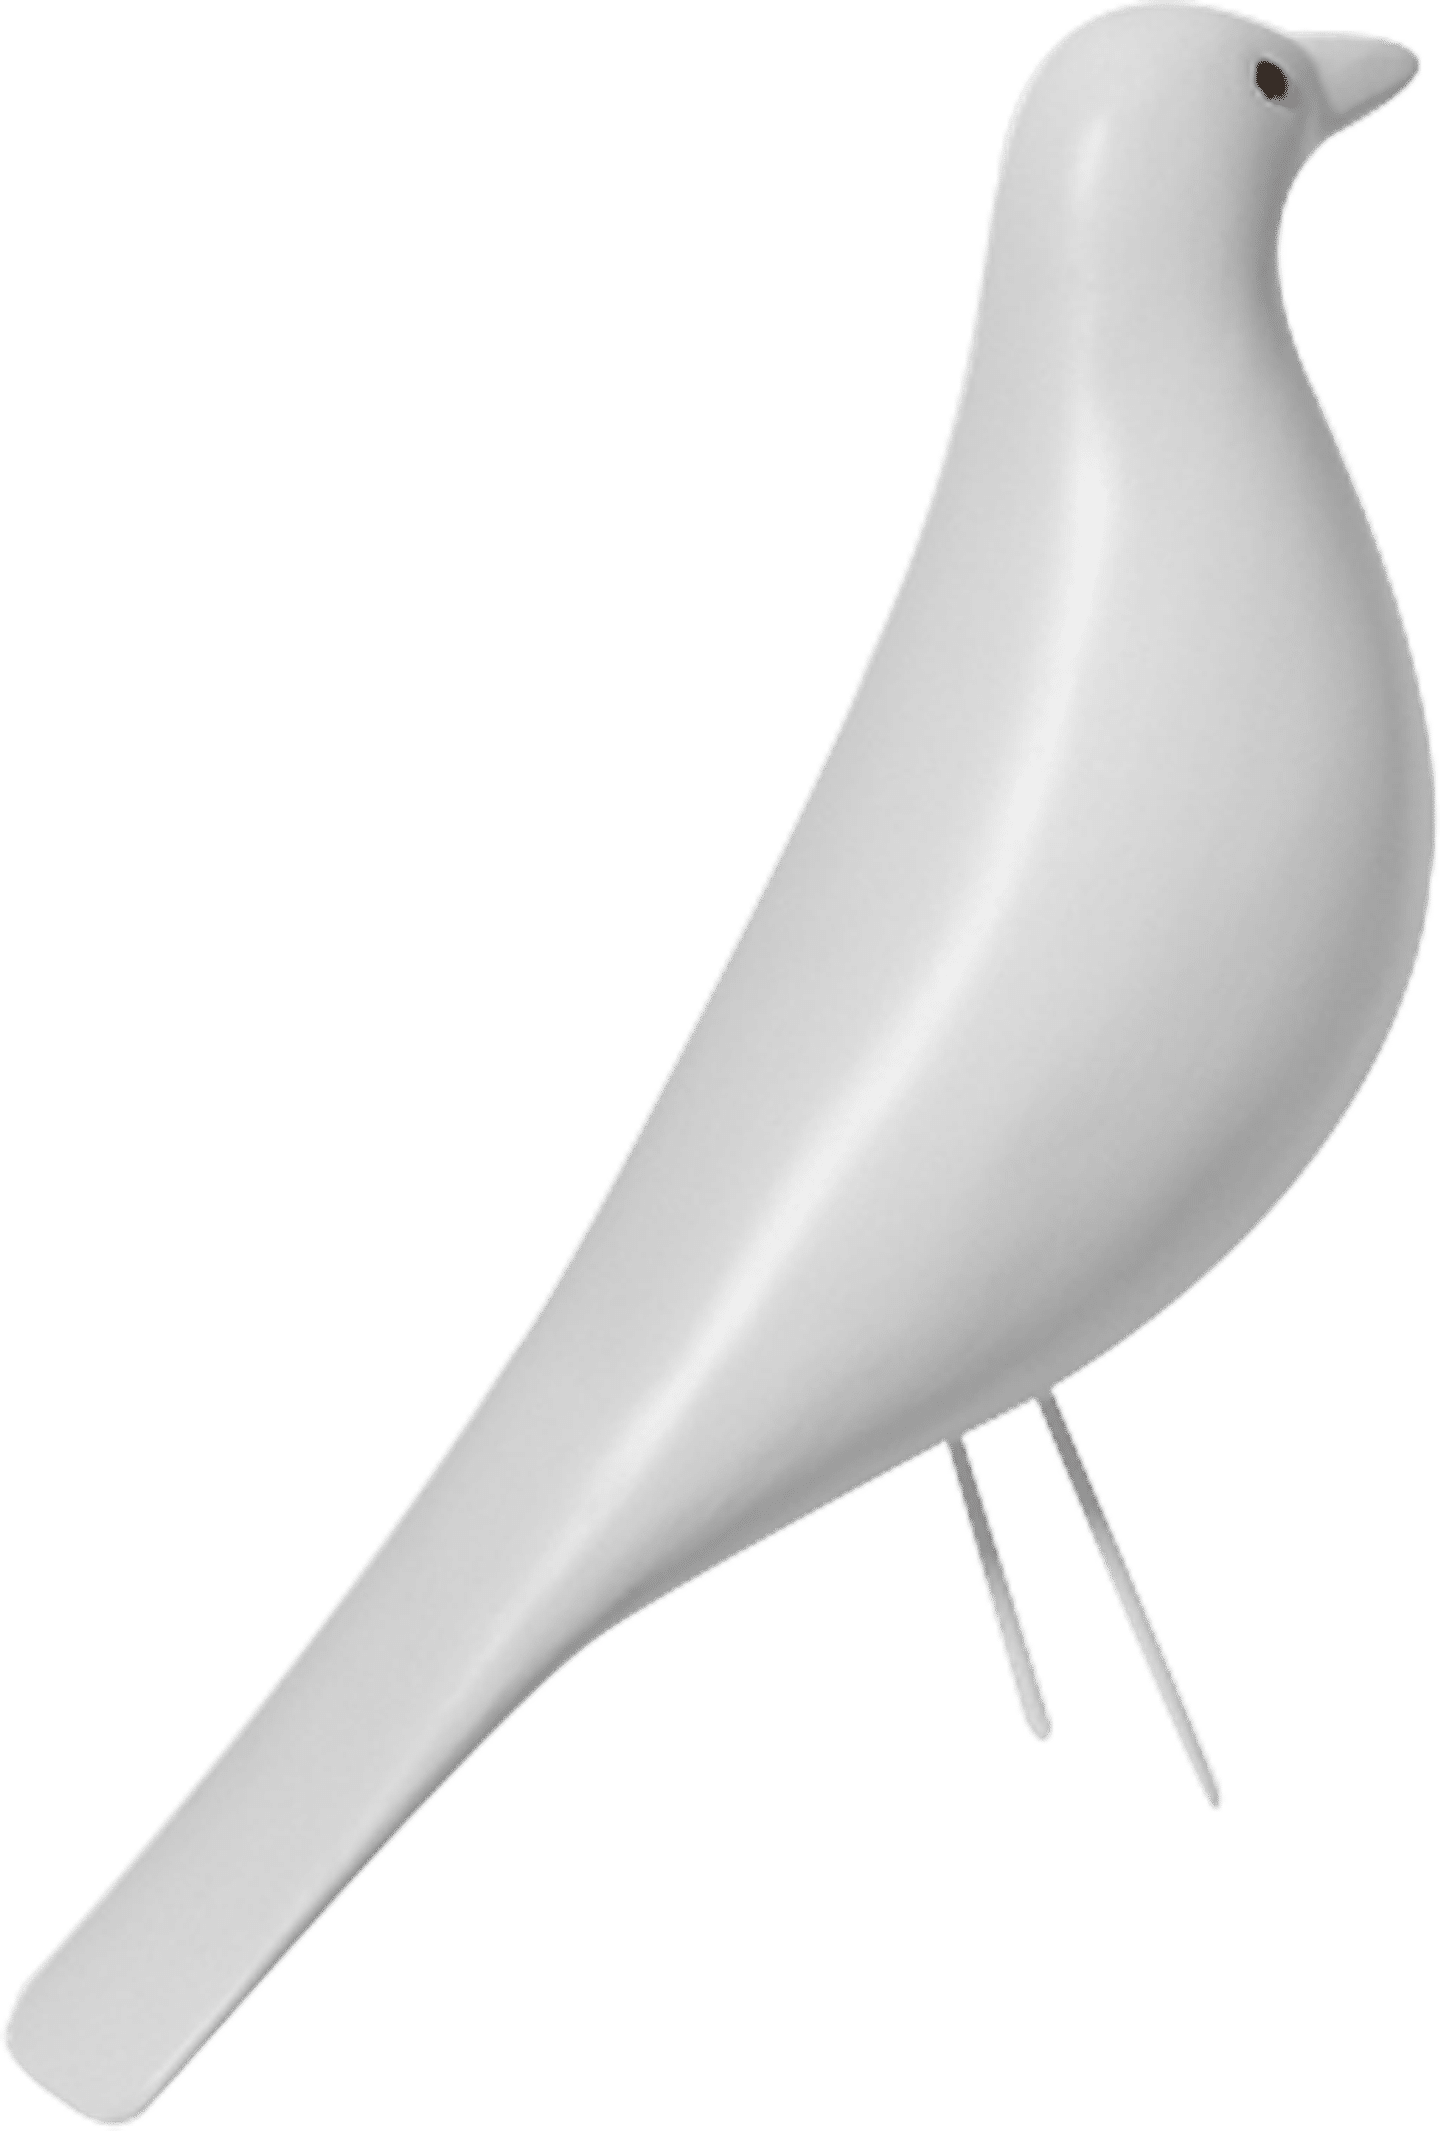 Uccello di casa in stile Eames Wihte image.